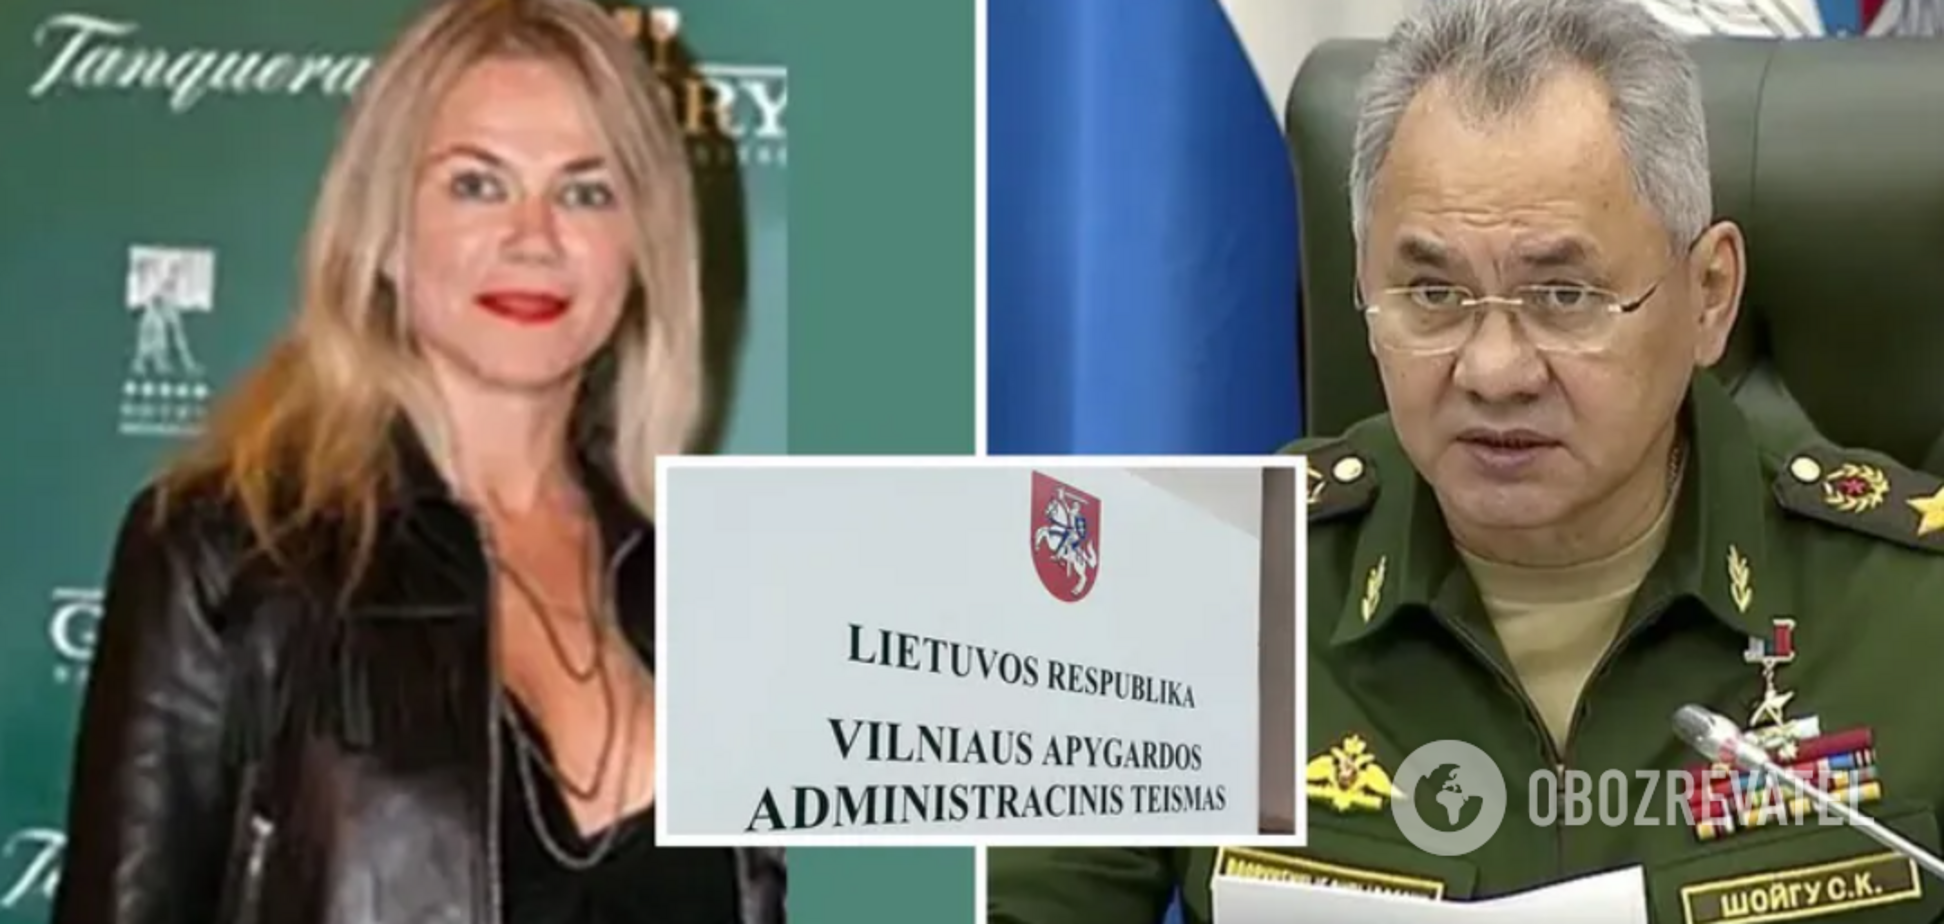 Вильнюсский суд подтвердил аннулирование вида на жительство в Литве экс-любовницы и матери детей Шойгу